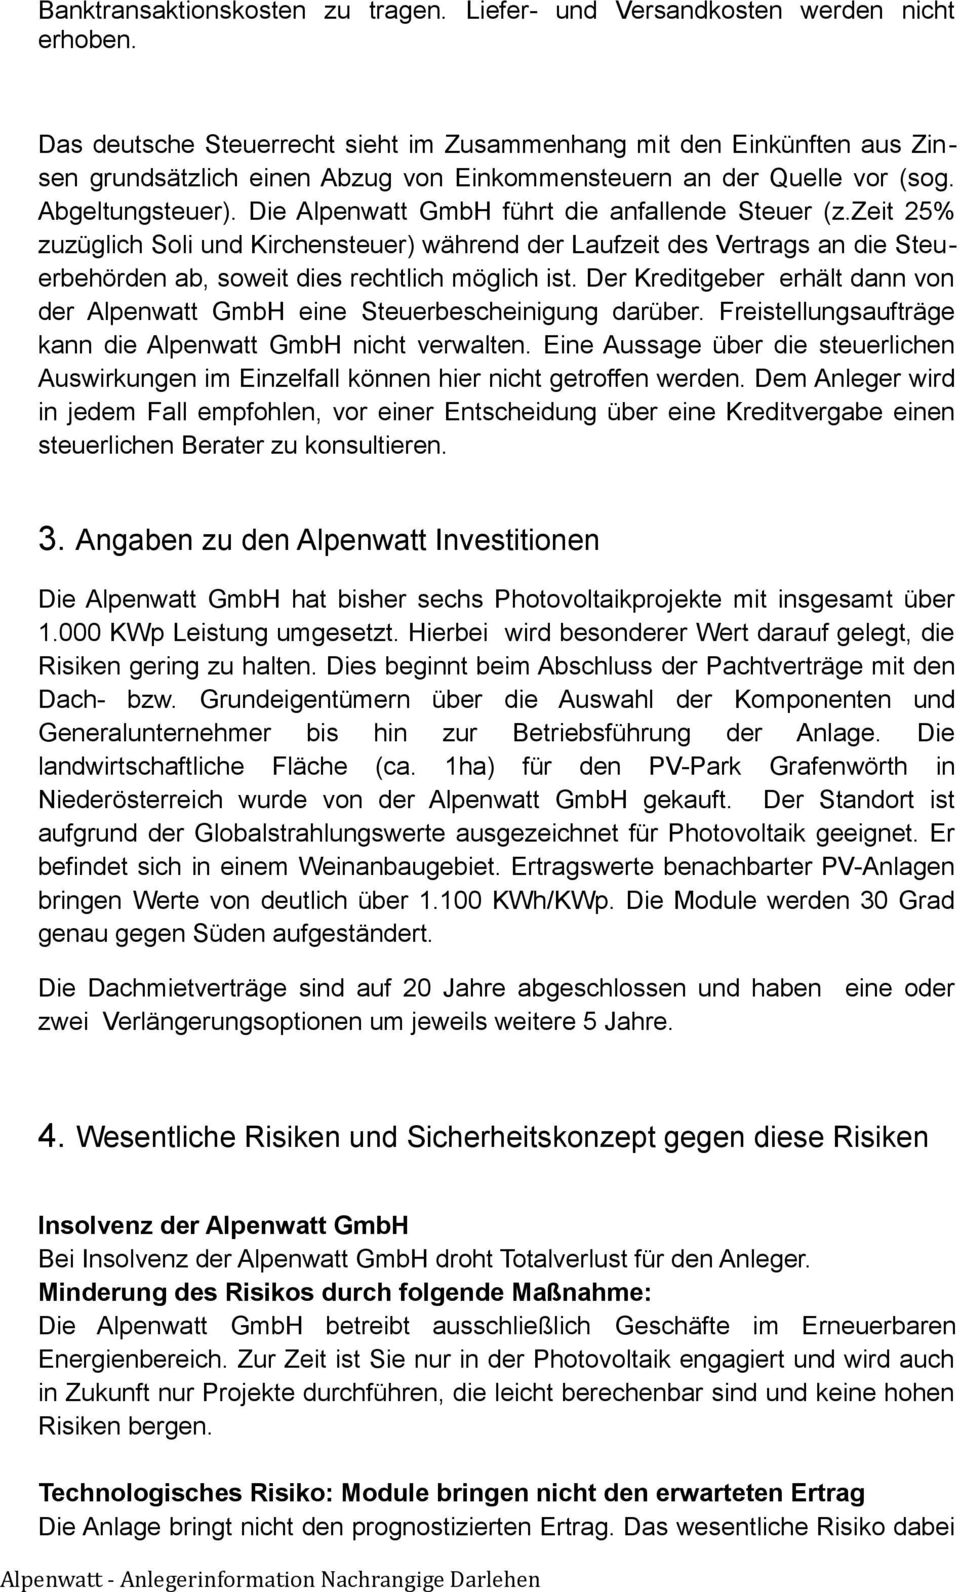 Die Alpenwatt GmbH führt die anfallende Steuer (z.zeit 25% zuzüglich Soli und Kirchensteuer) während der Laufzeit des Vertrags an die Steuerbehörden ab, soweit dies rechtlich möglich ist.